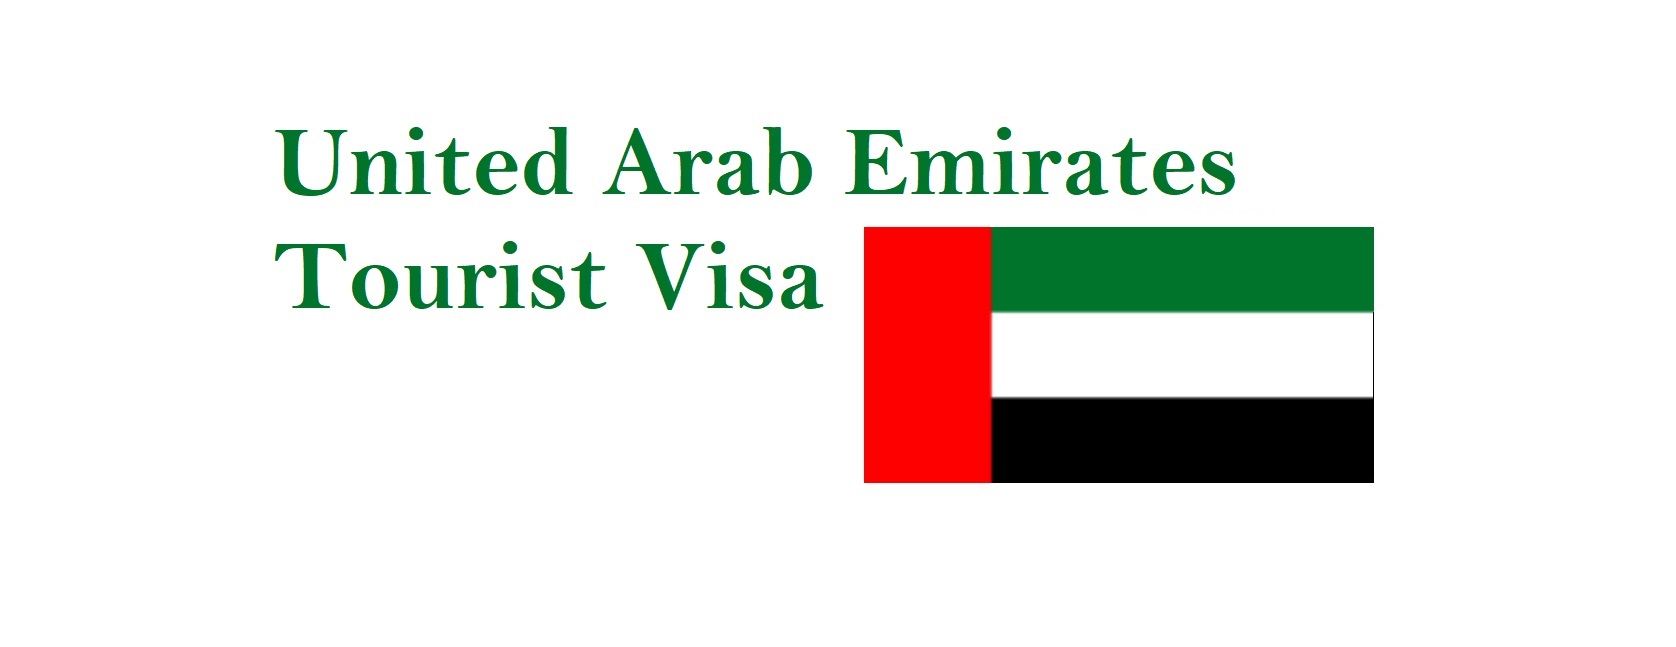 UAE Visa Policy